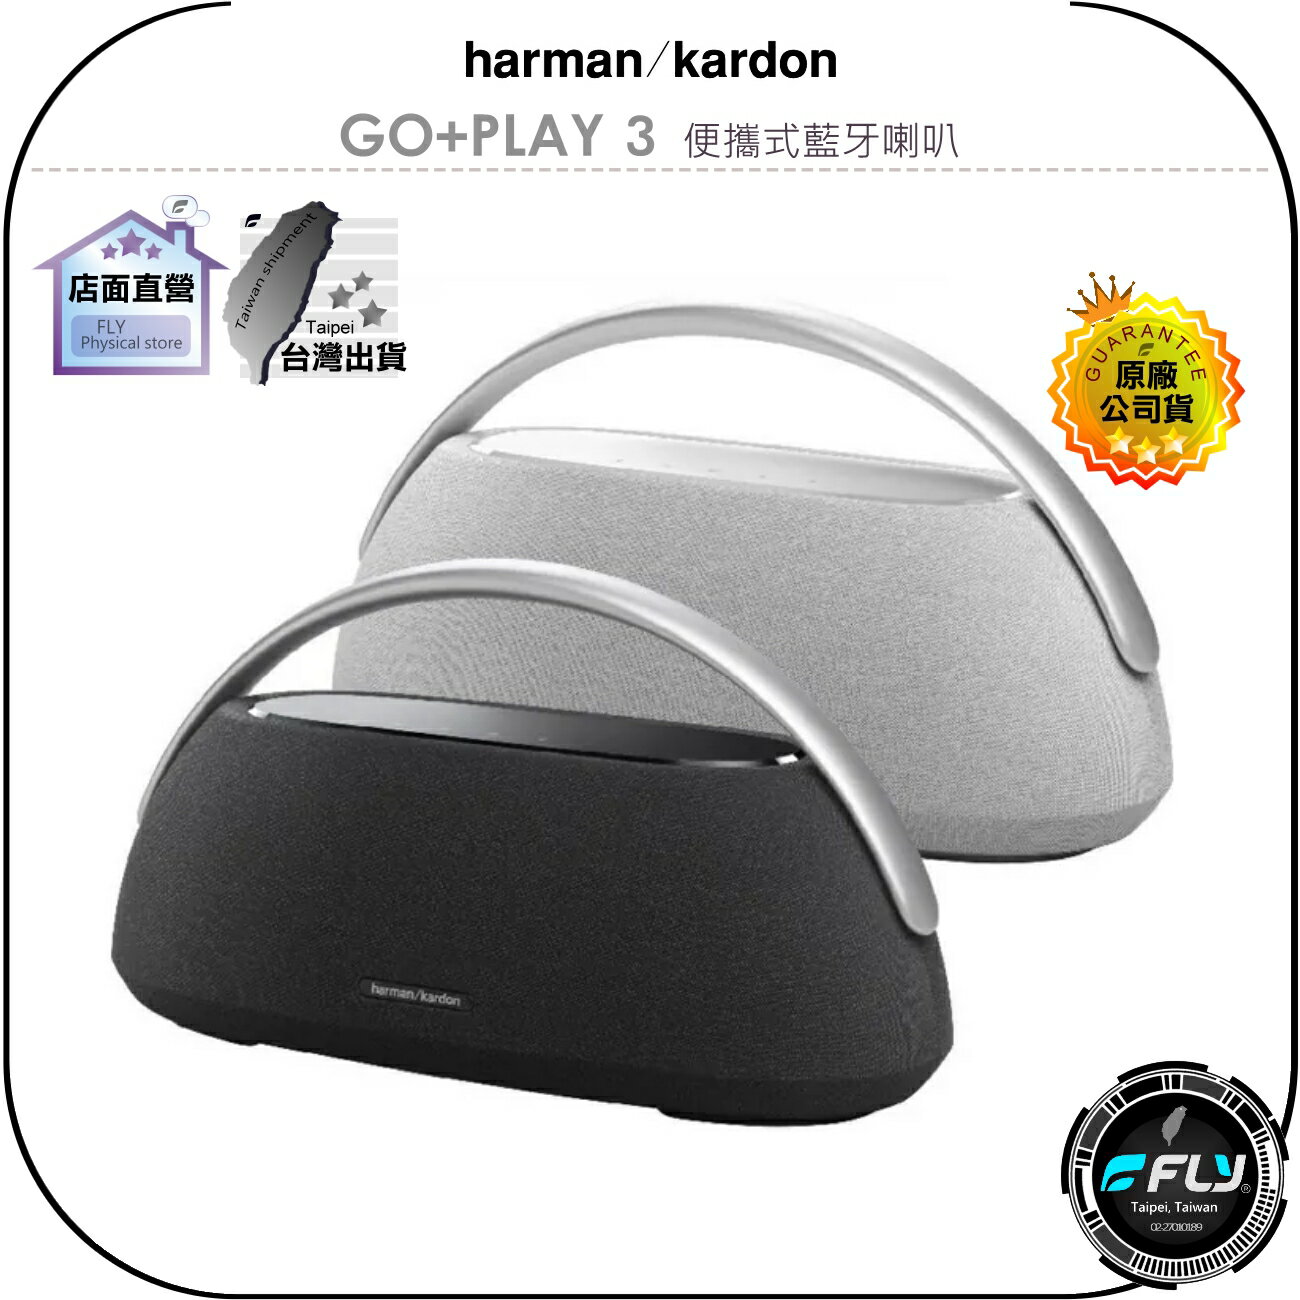 【飛翔商城】harman kardon GO+PLAY 3 便攜式藍牙喇叭◉公司貨◉藍芽音響◉TYPE-C充電◉編織布料